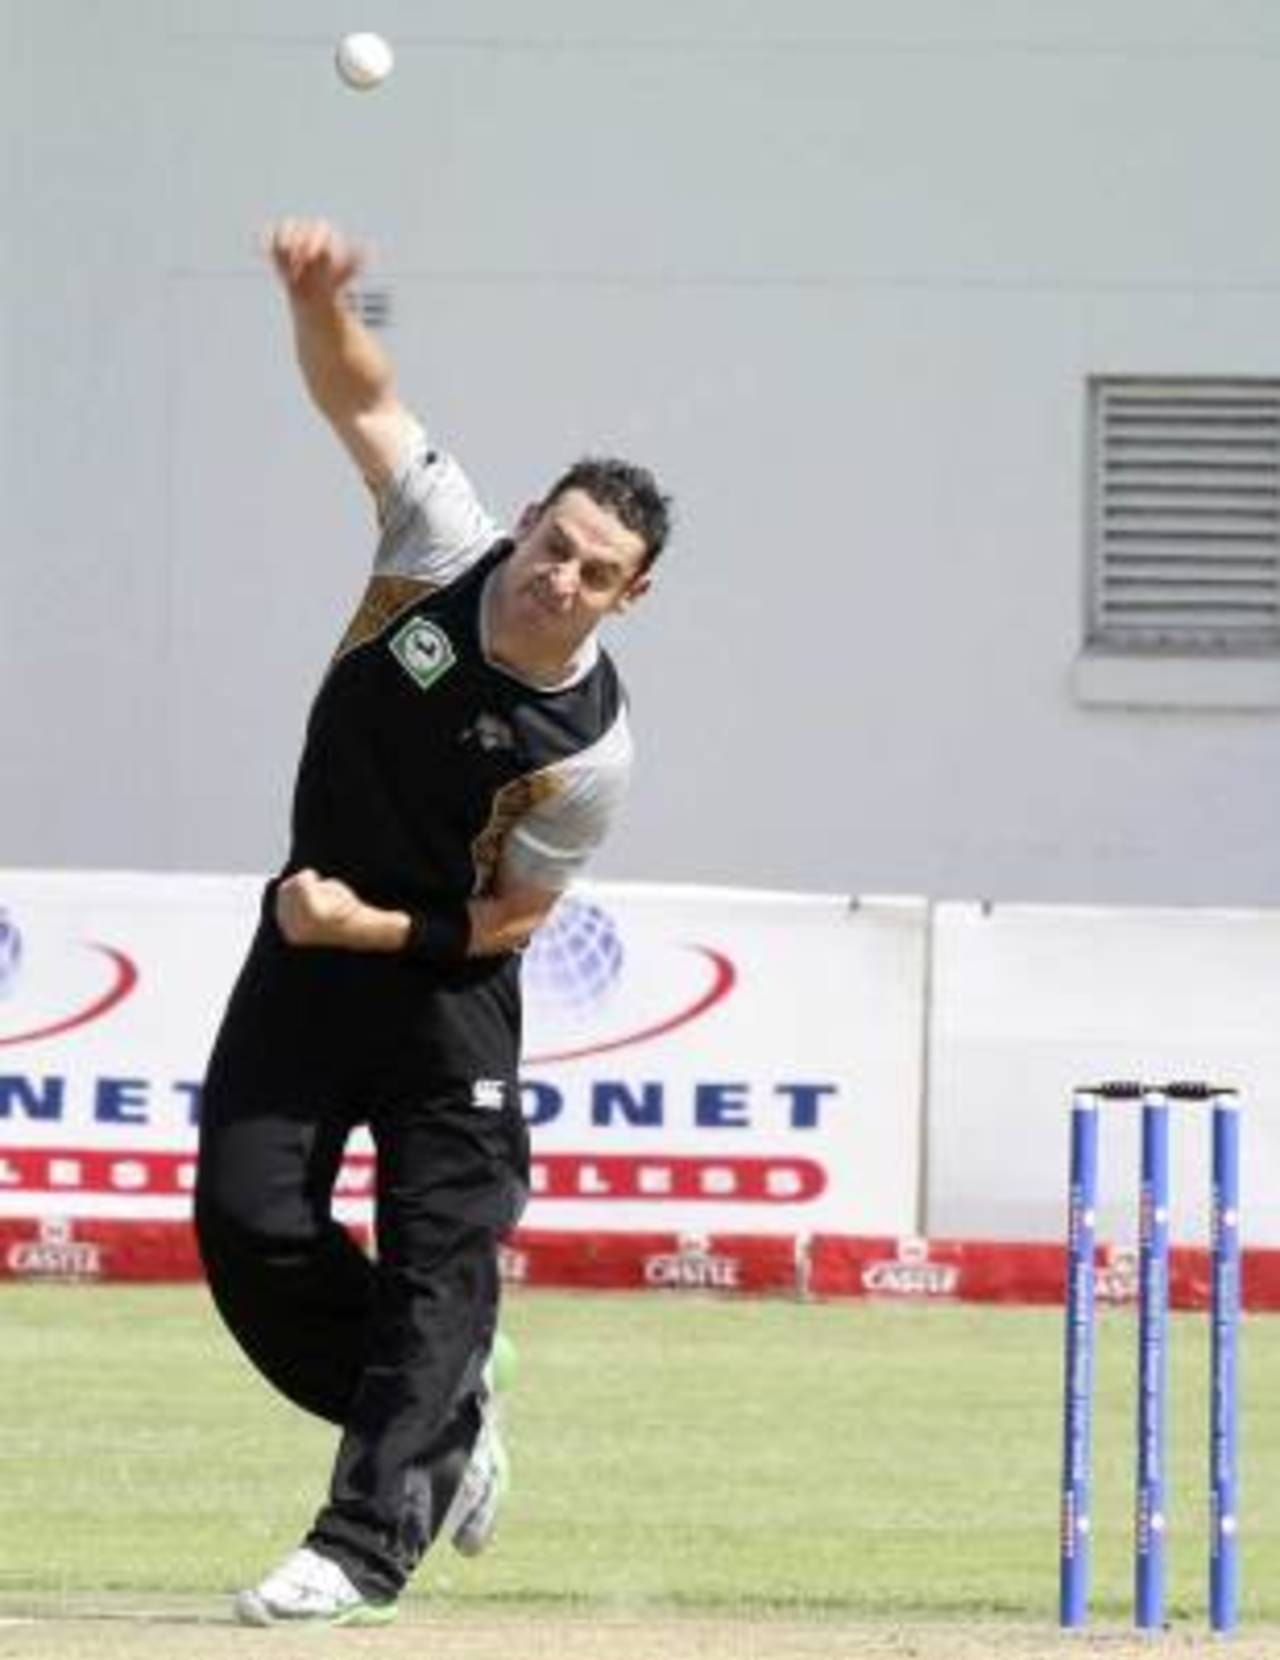 Nathan McCullum bowled economically, Zimbabwe v New Zealand, 1st Twenty20 international, Harare